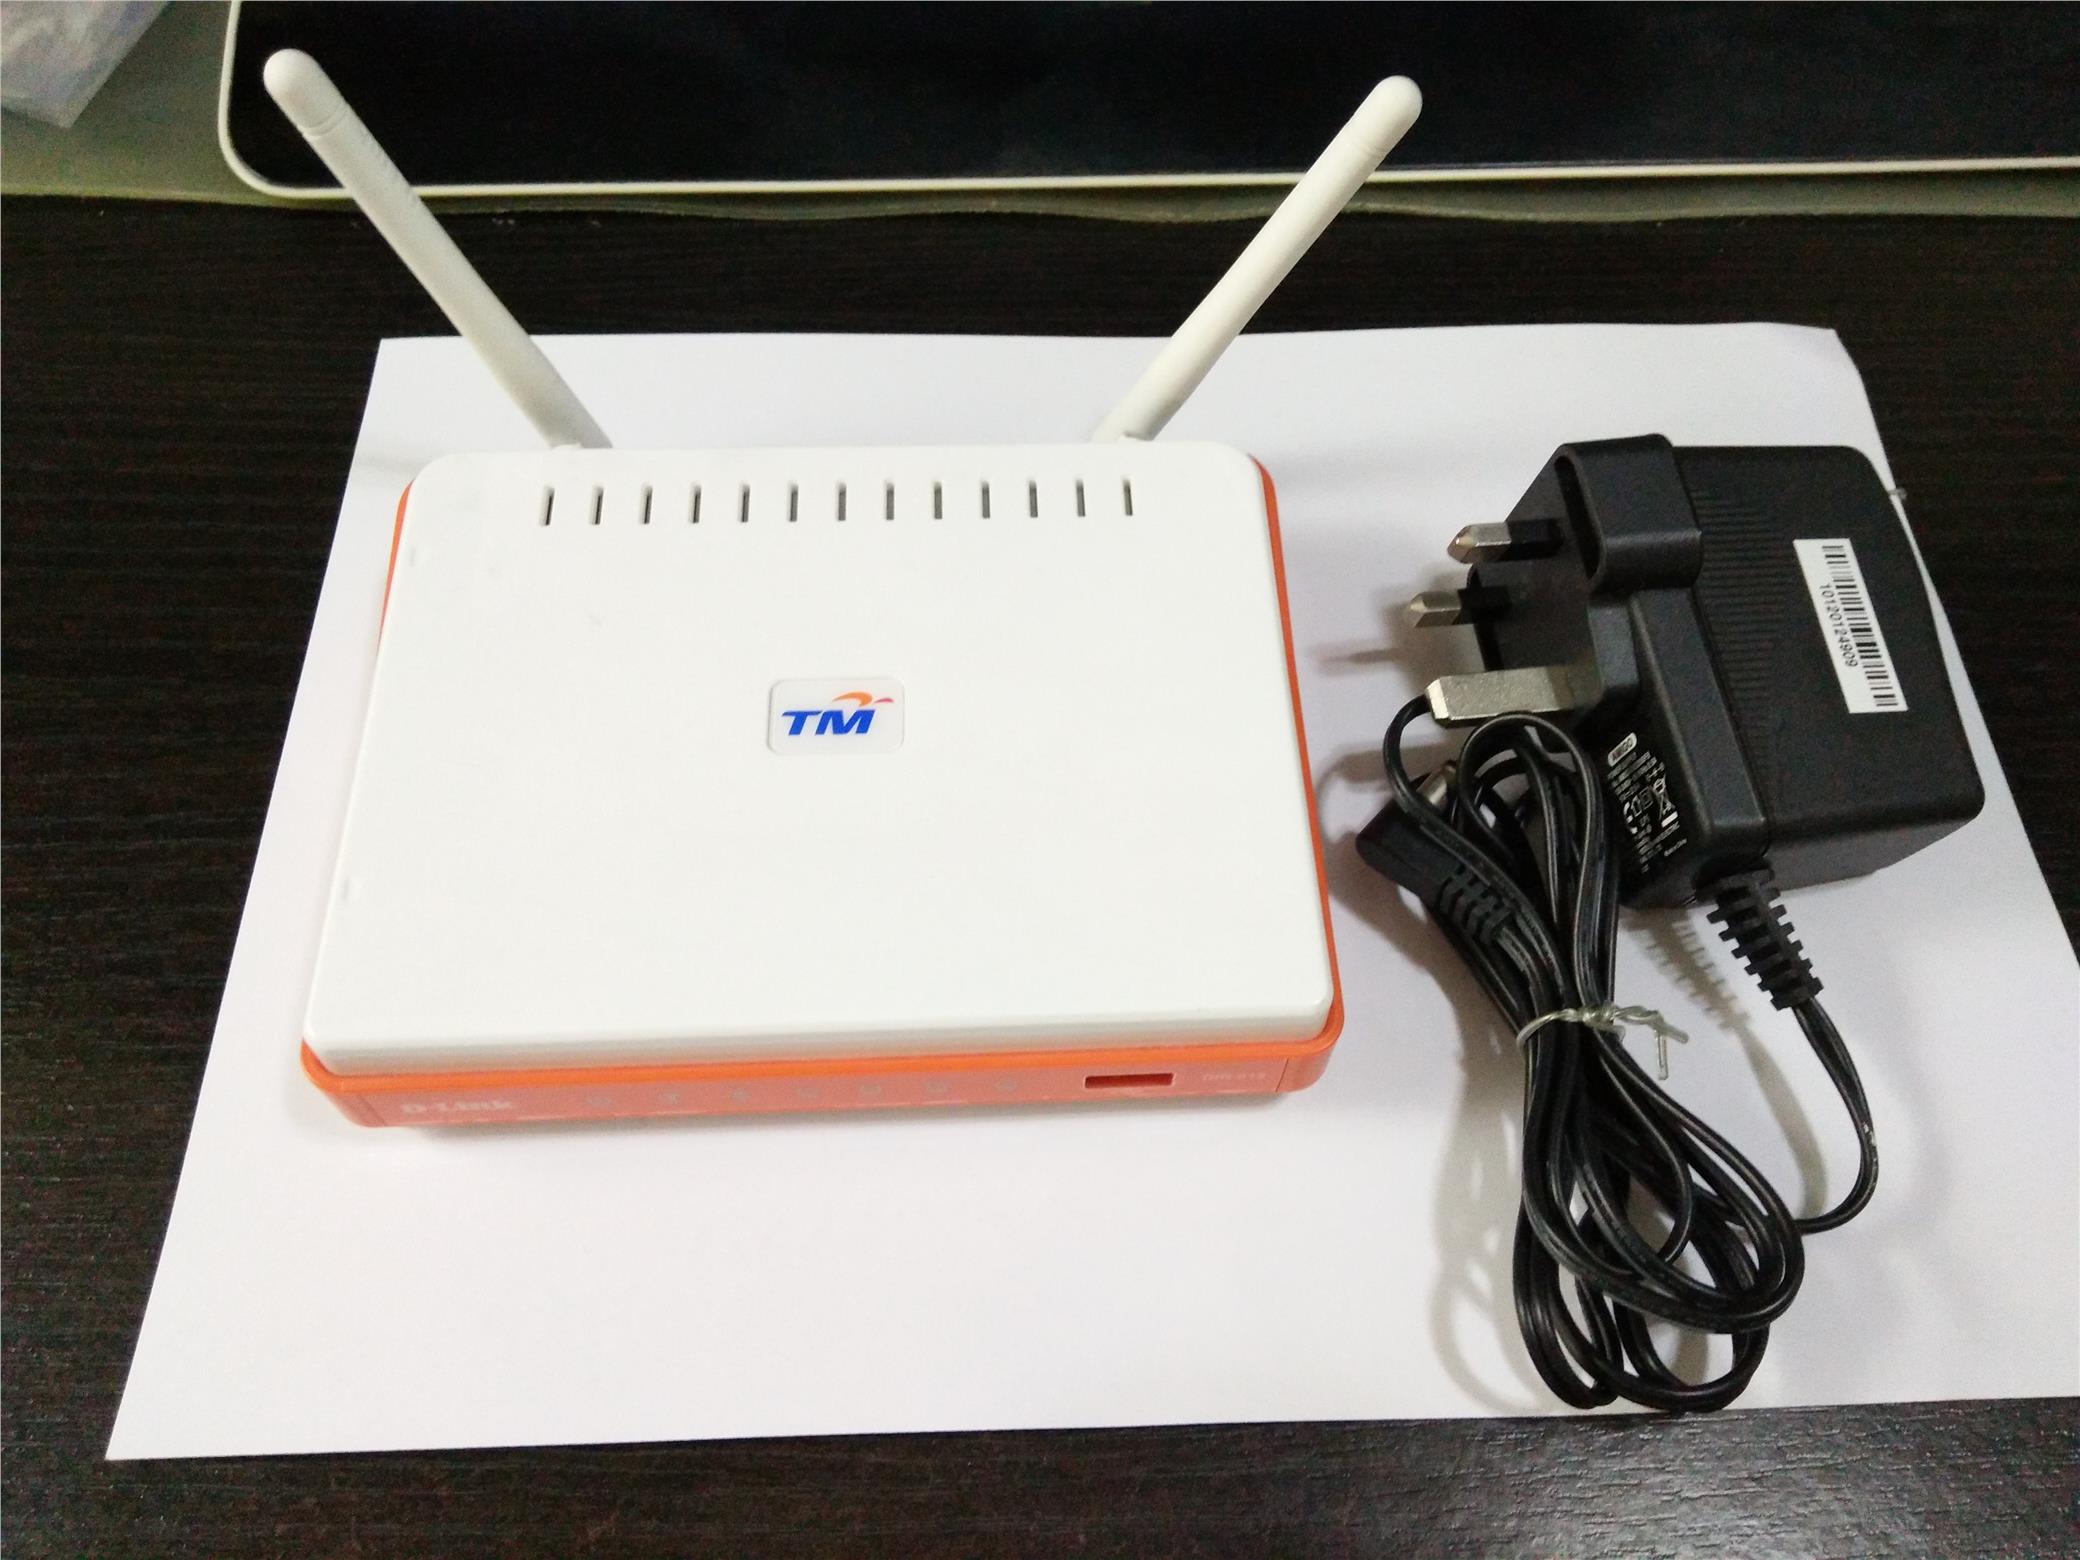 TM Unifi Router ( Dlink - DIR-615 ) (end 12/23/2018 5:15 PM)